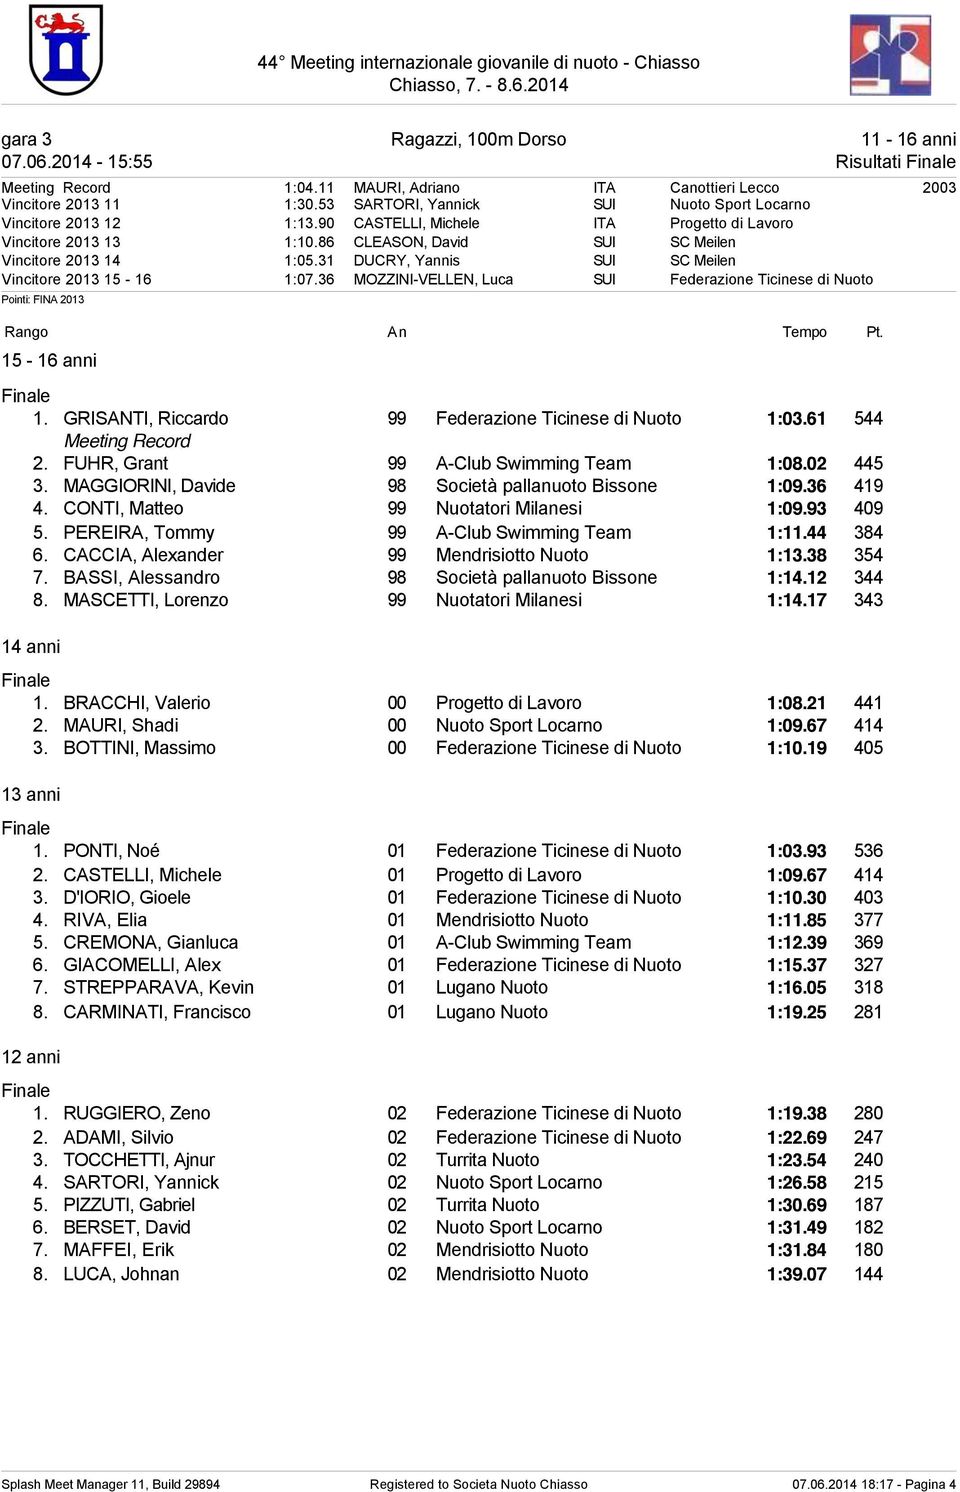 31 DUCRY, Yannis SUI SC Meilen Vincitore 2013 15-16 1:07.36 MOZZINI-VELLEN, Luca SUI Federazione Ticinese di Nuoto Rango An Tempo Pt. 15-16 anni 1.